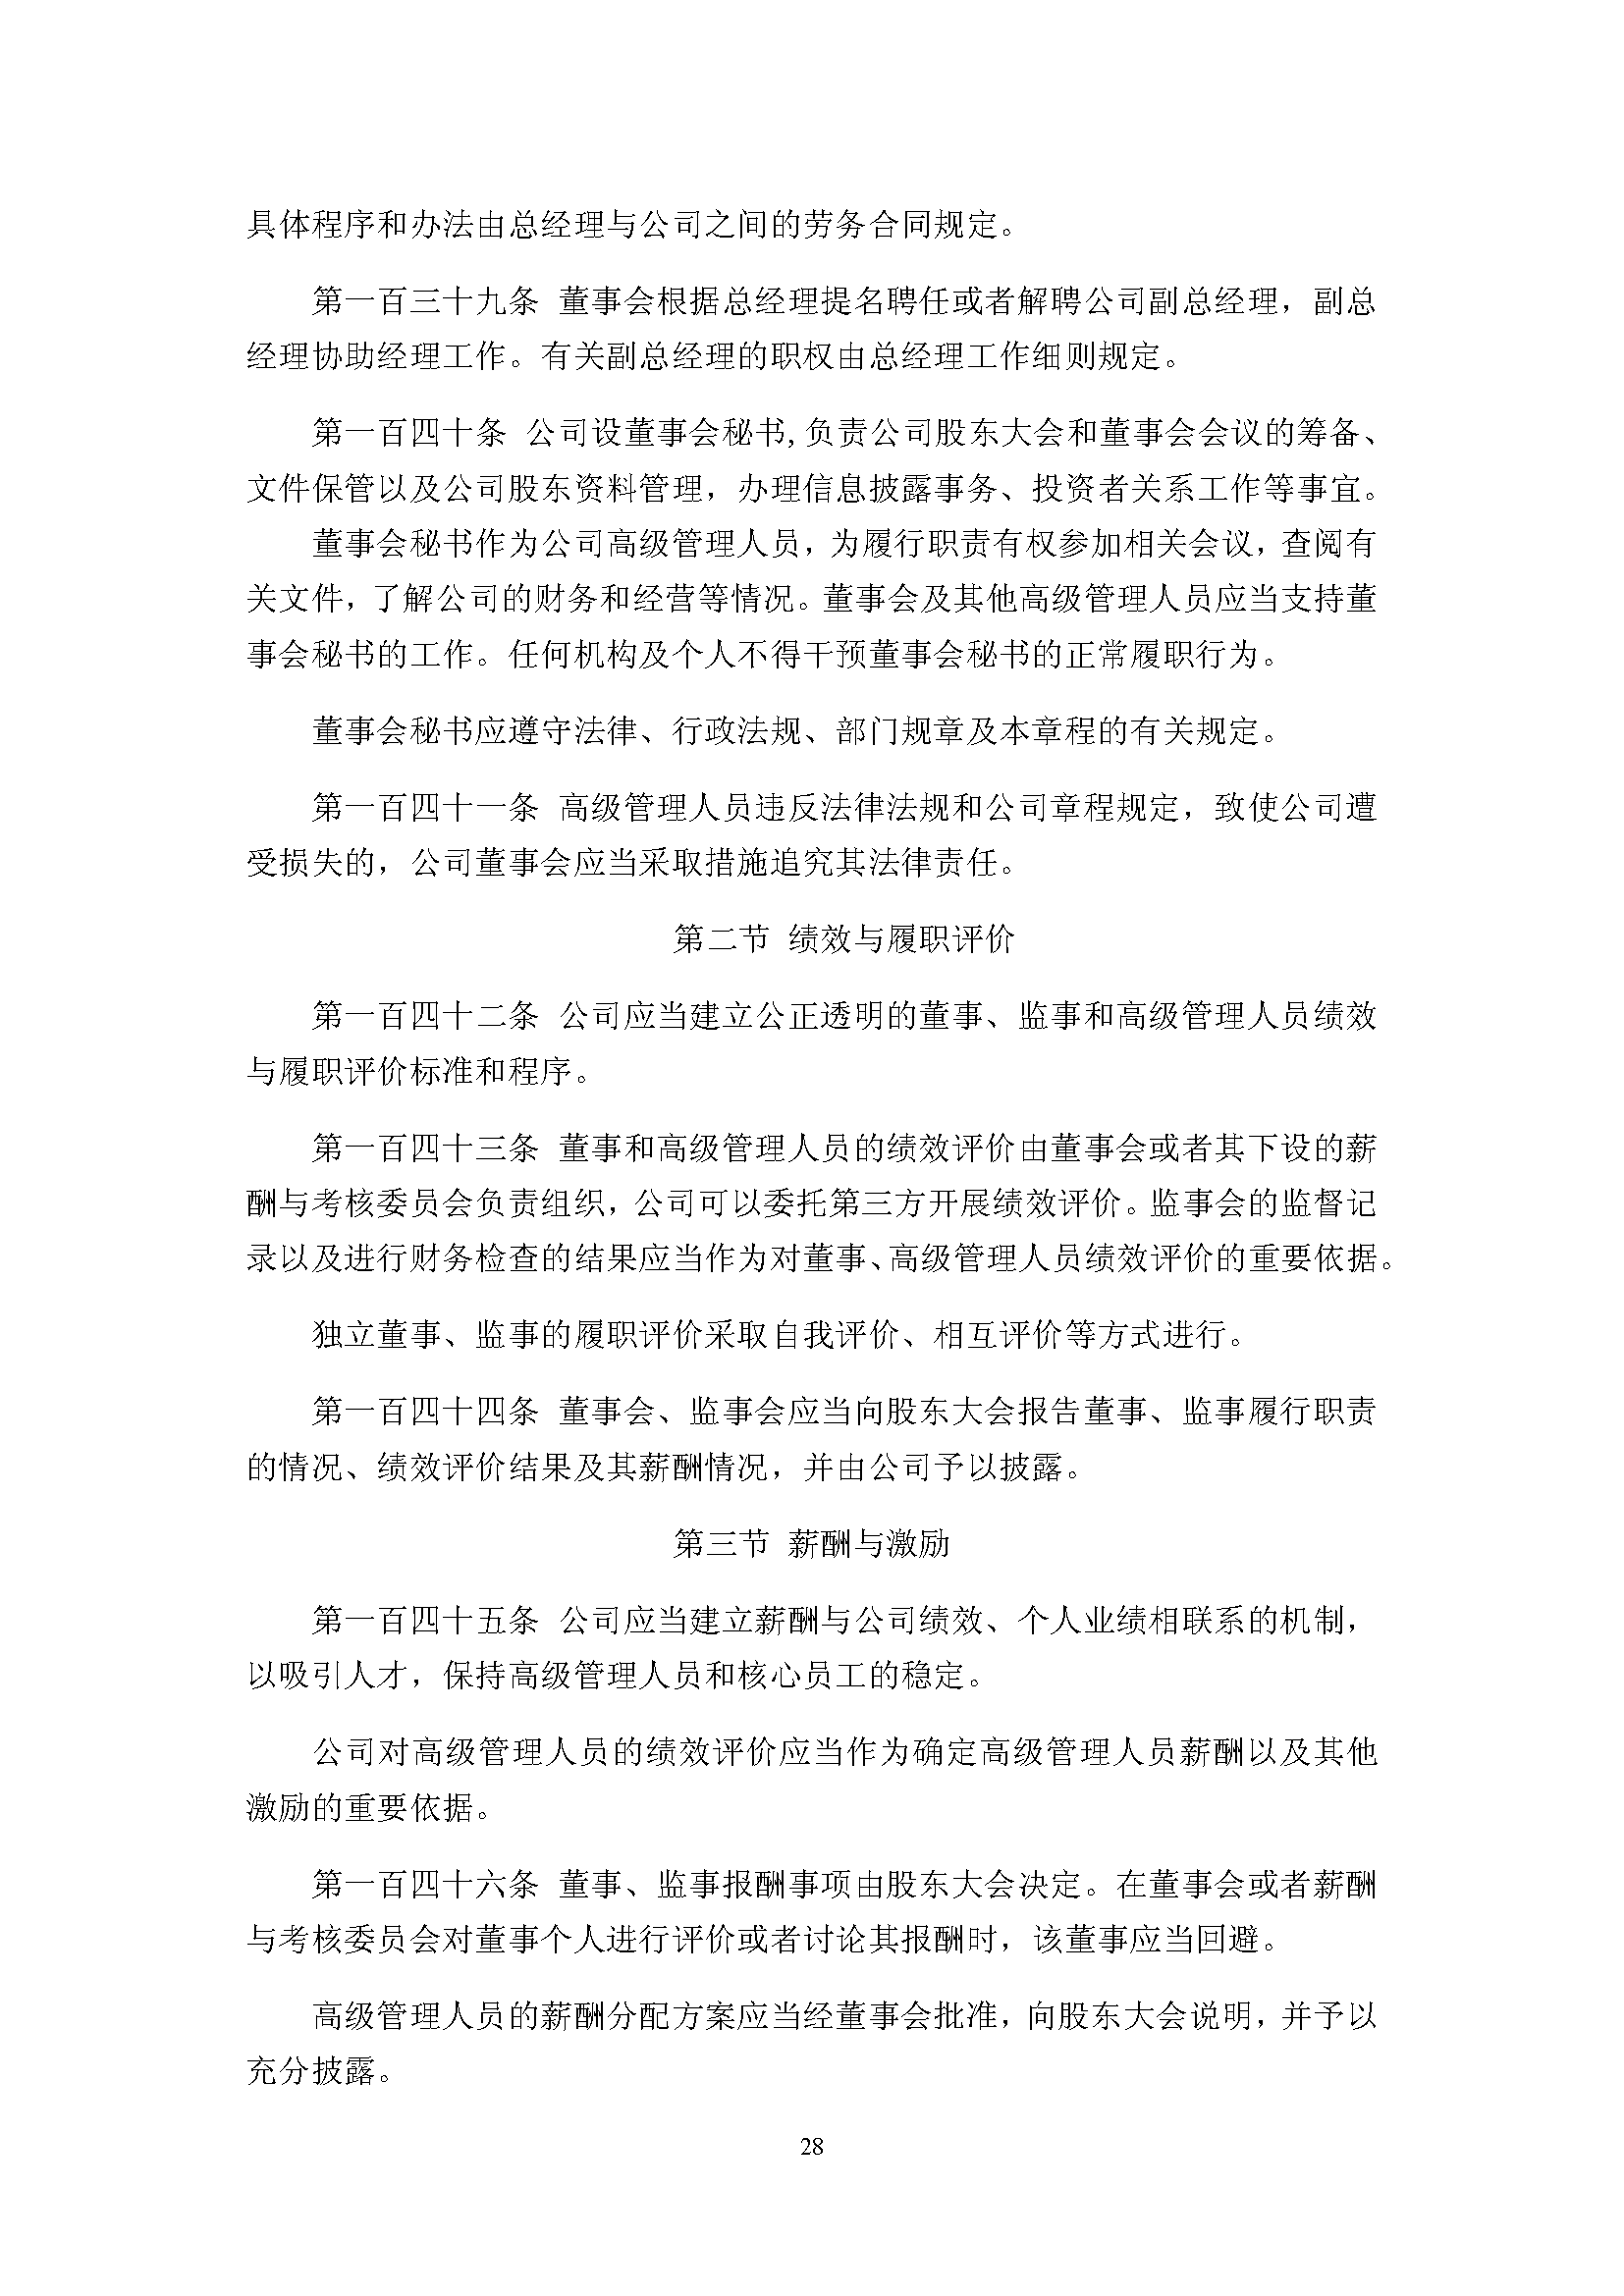 宜华生活公司章程(2019-5-31)_页面_28.png